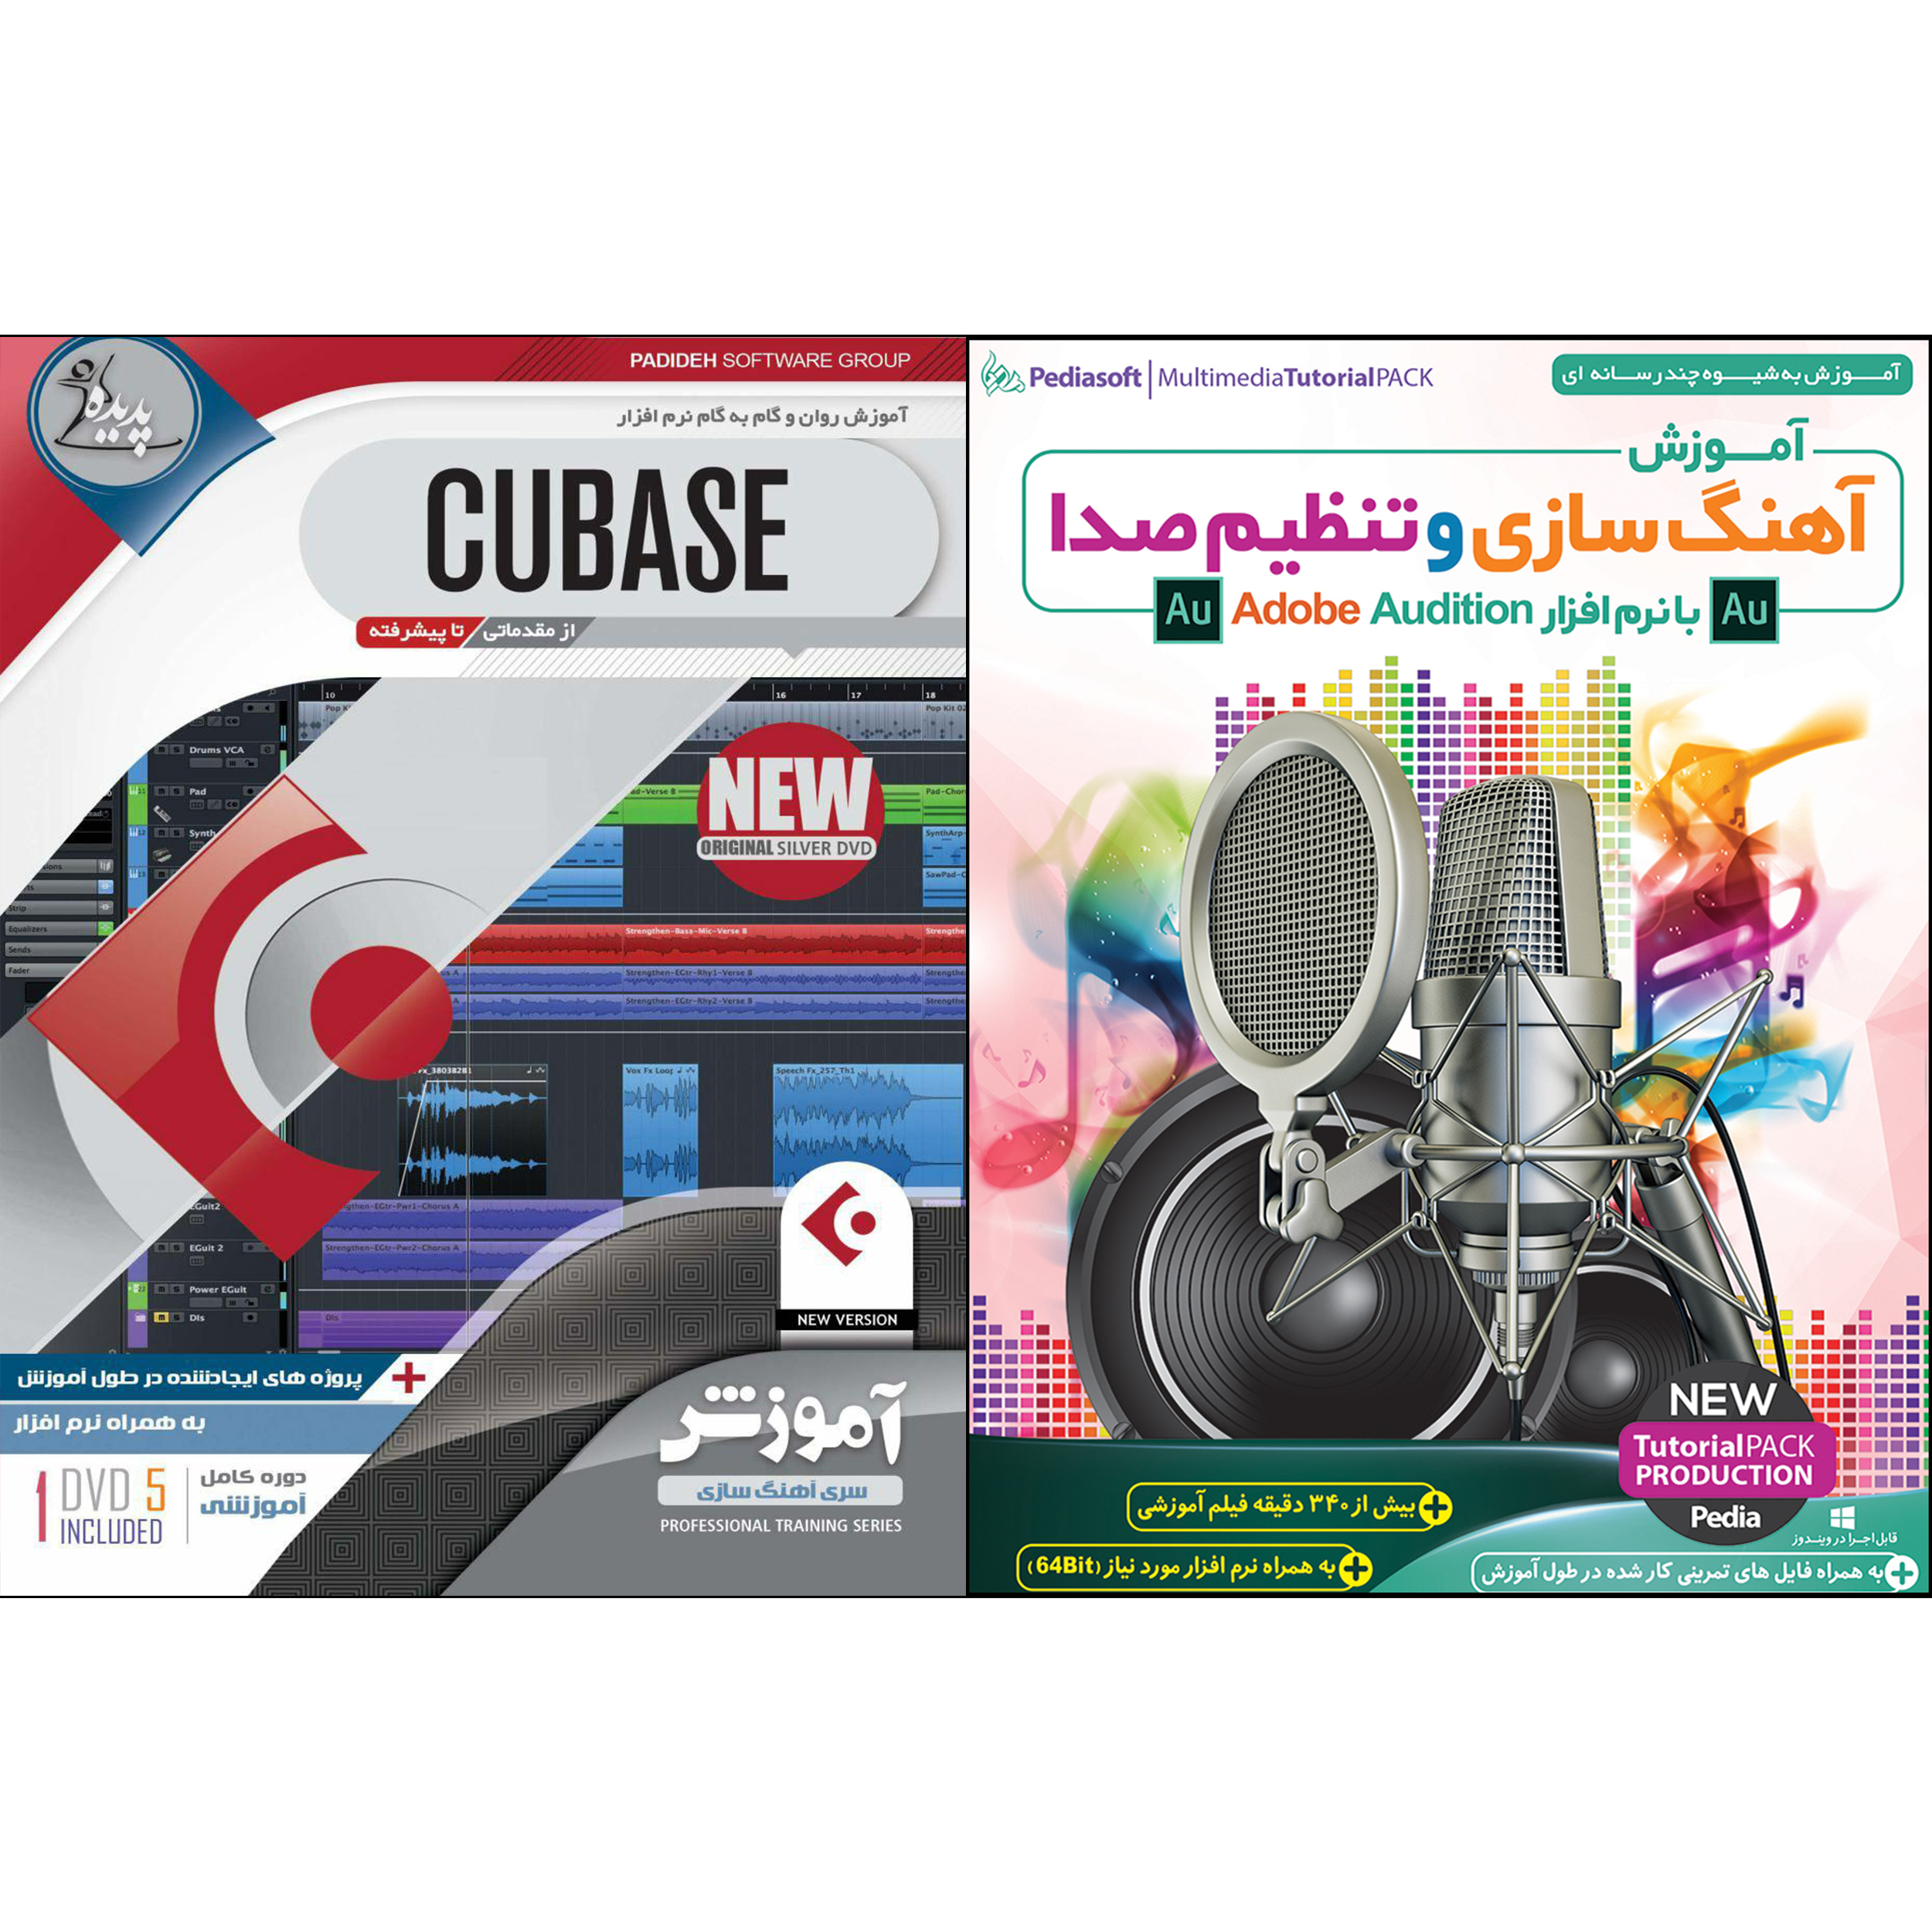 نرم افزار آموزش آهنگ سازی و تنظیم صدا با نرم افزار Adobe Audition نشر پدیا سافت به همراه نرم افزار آموزش CUBASE نشر پدیده